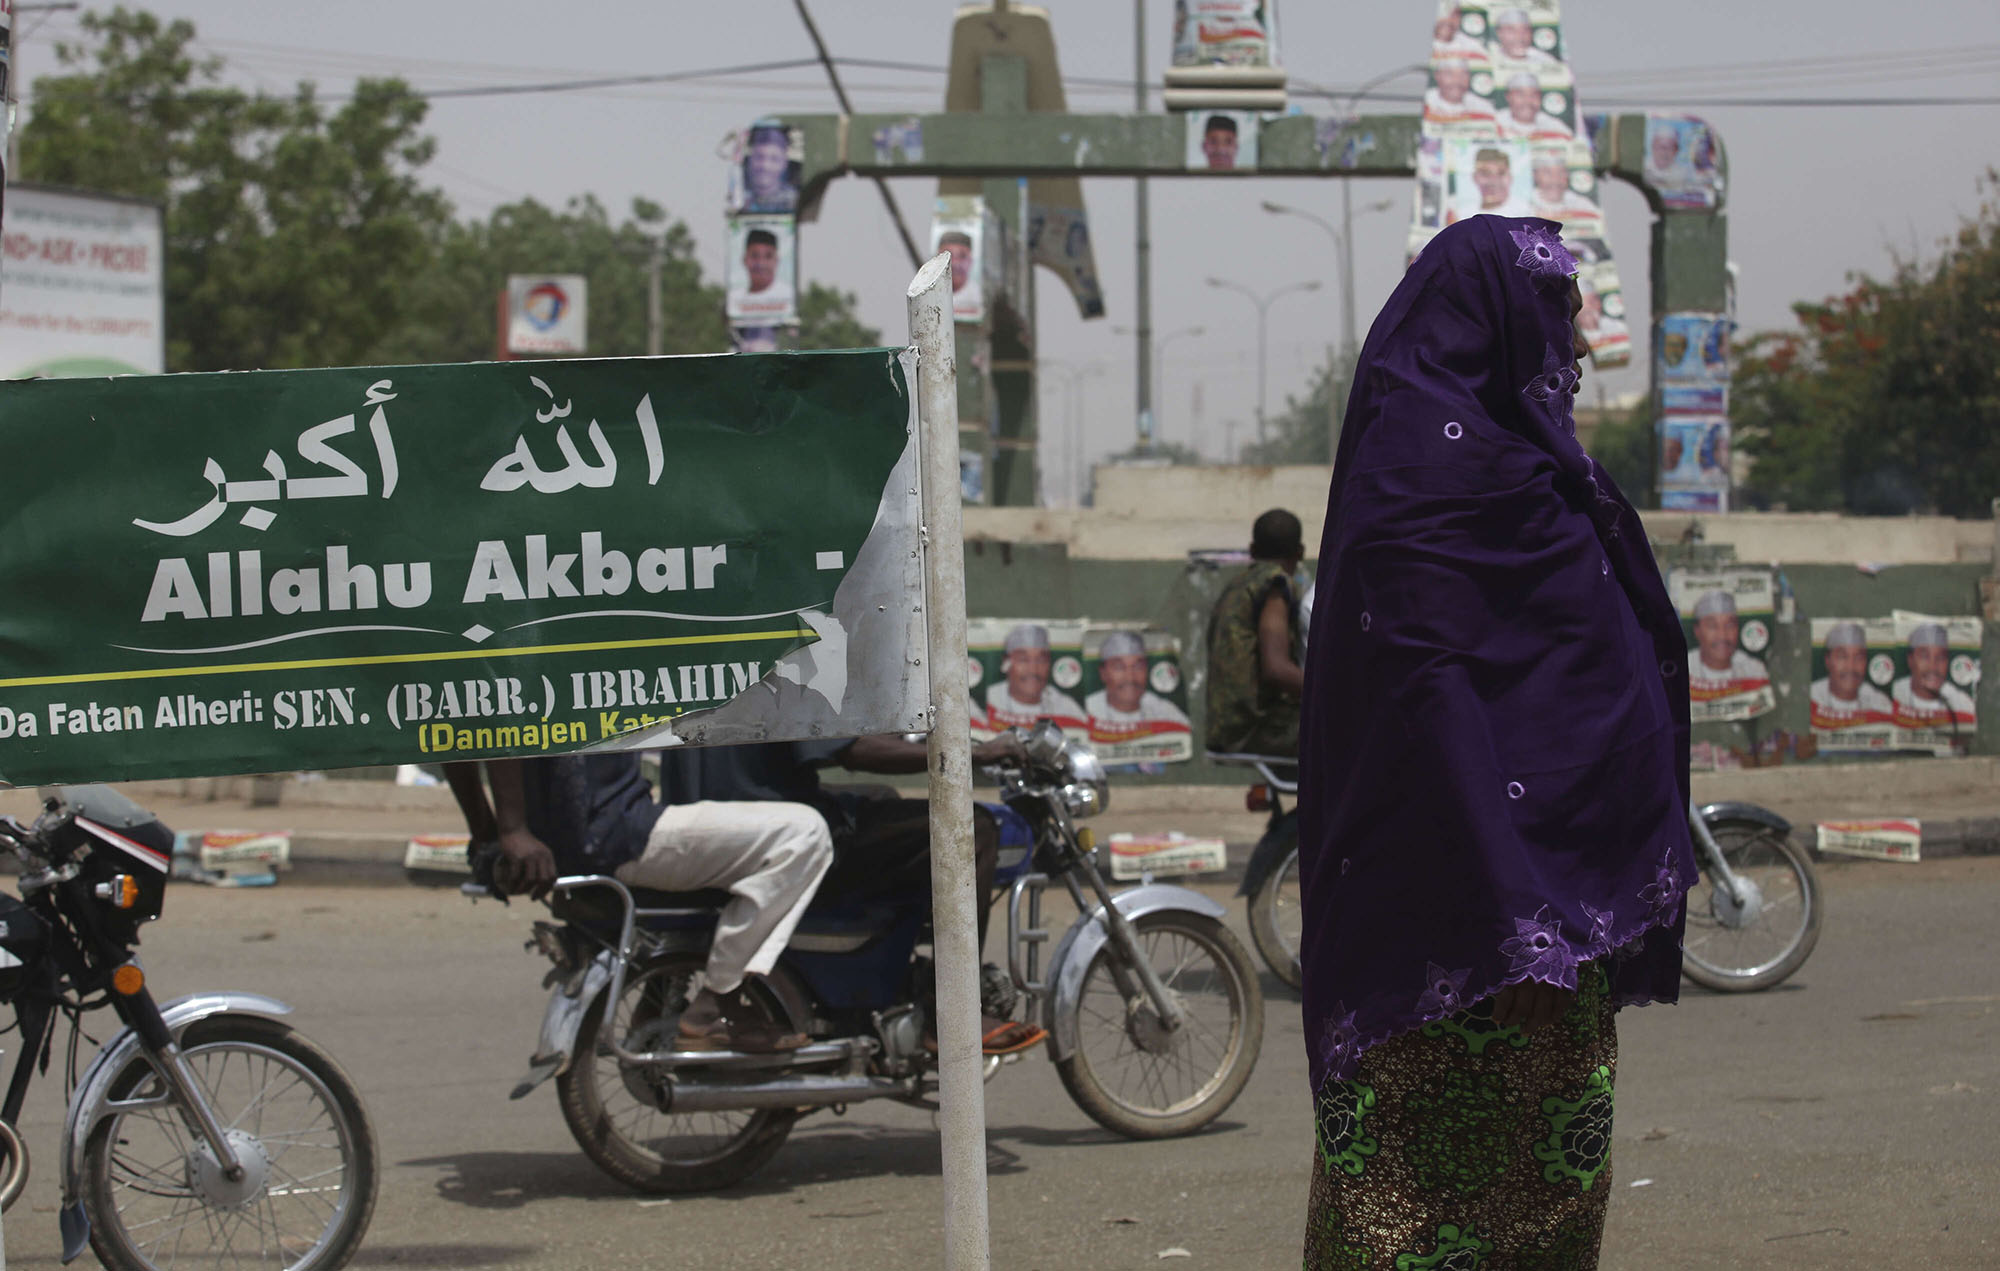 الشريعة الاسلامية مطبقة في شمال نيجيريا رغم علمانية الدولة 